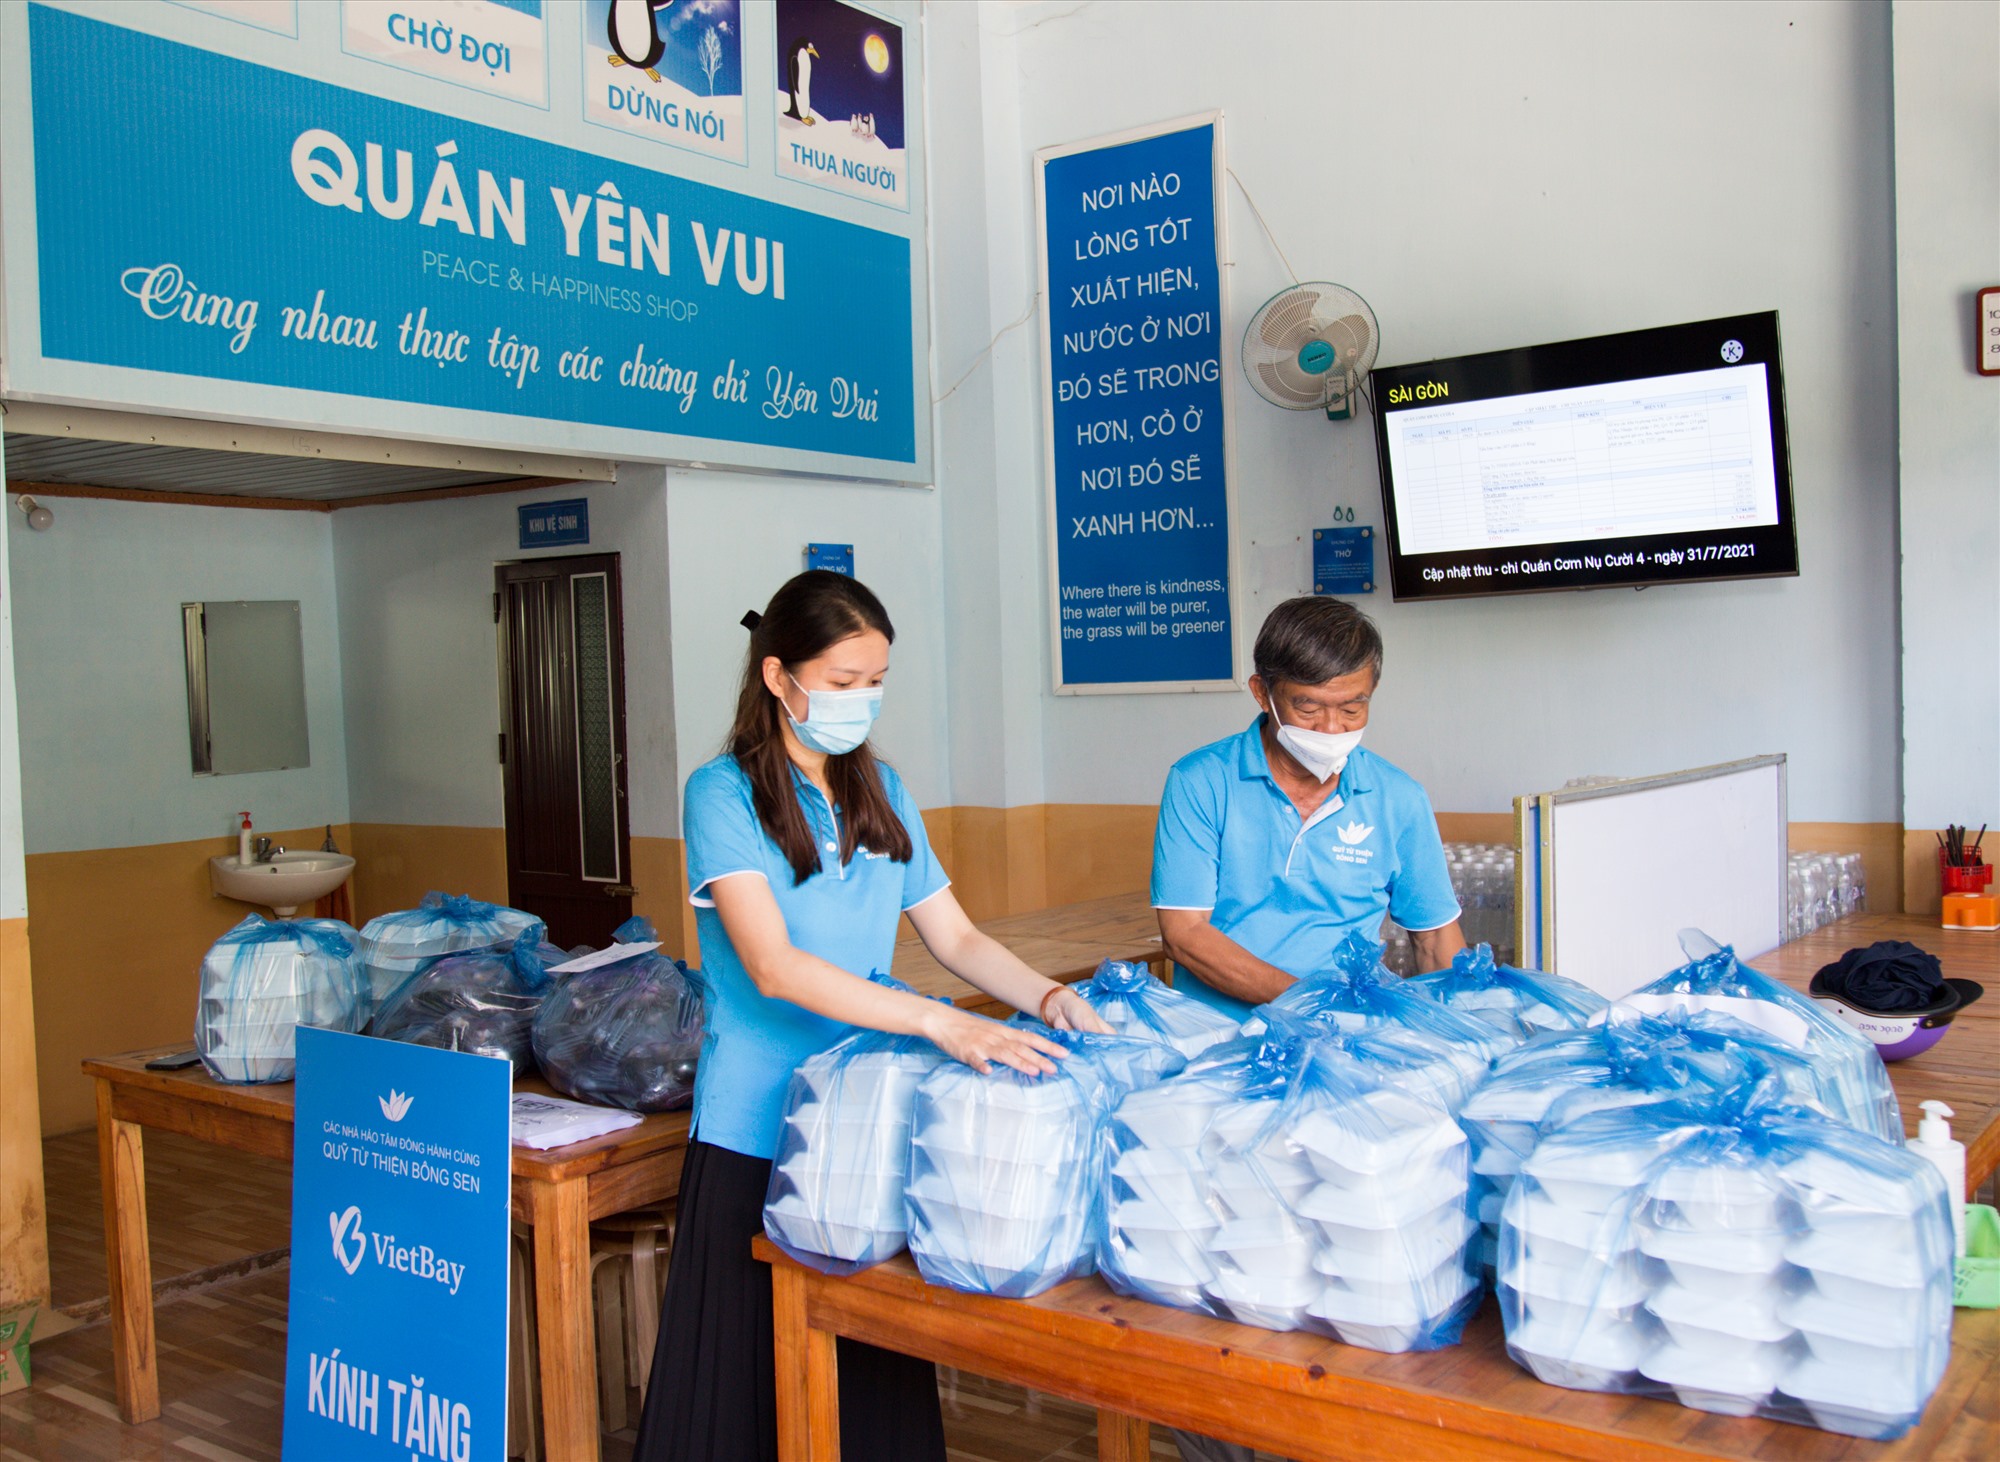 Chủ nhiệm quán Yên Vui, ông Nguyễn Duy Ái cho biết: Nguồn kinh phí để duy trì hoạt động của quán được Quỹ Bông Sen TP.HCM hỗ trợ